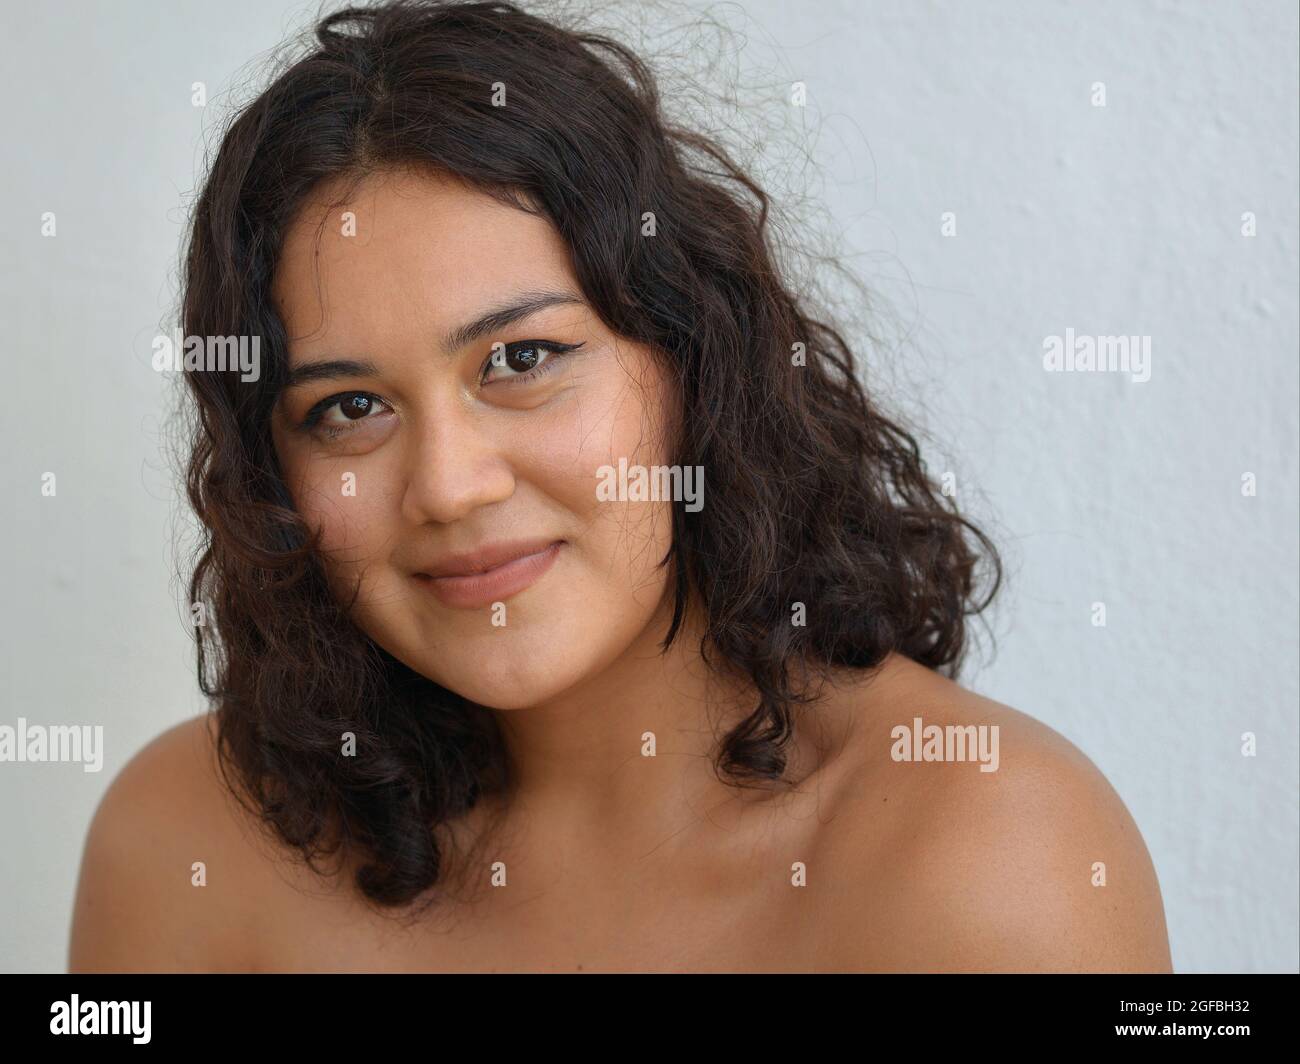 Jeune belle femme mexicaine Latina avec des cheveux longs et bouclés, des yeux bruns souriants et des épaules nues pose pour l'appareil photo devant un fond blanc. Banque D'Images